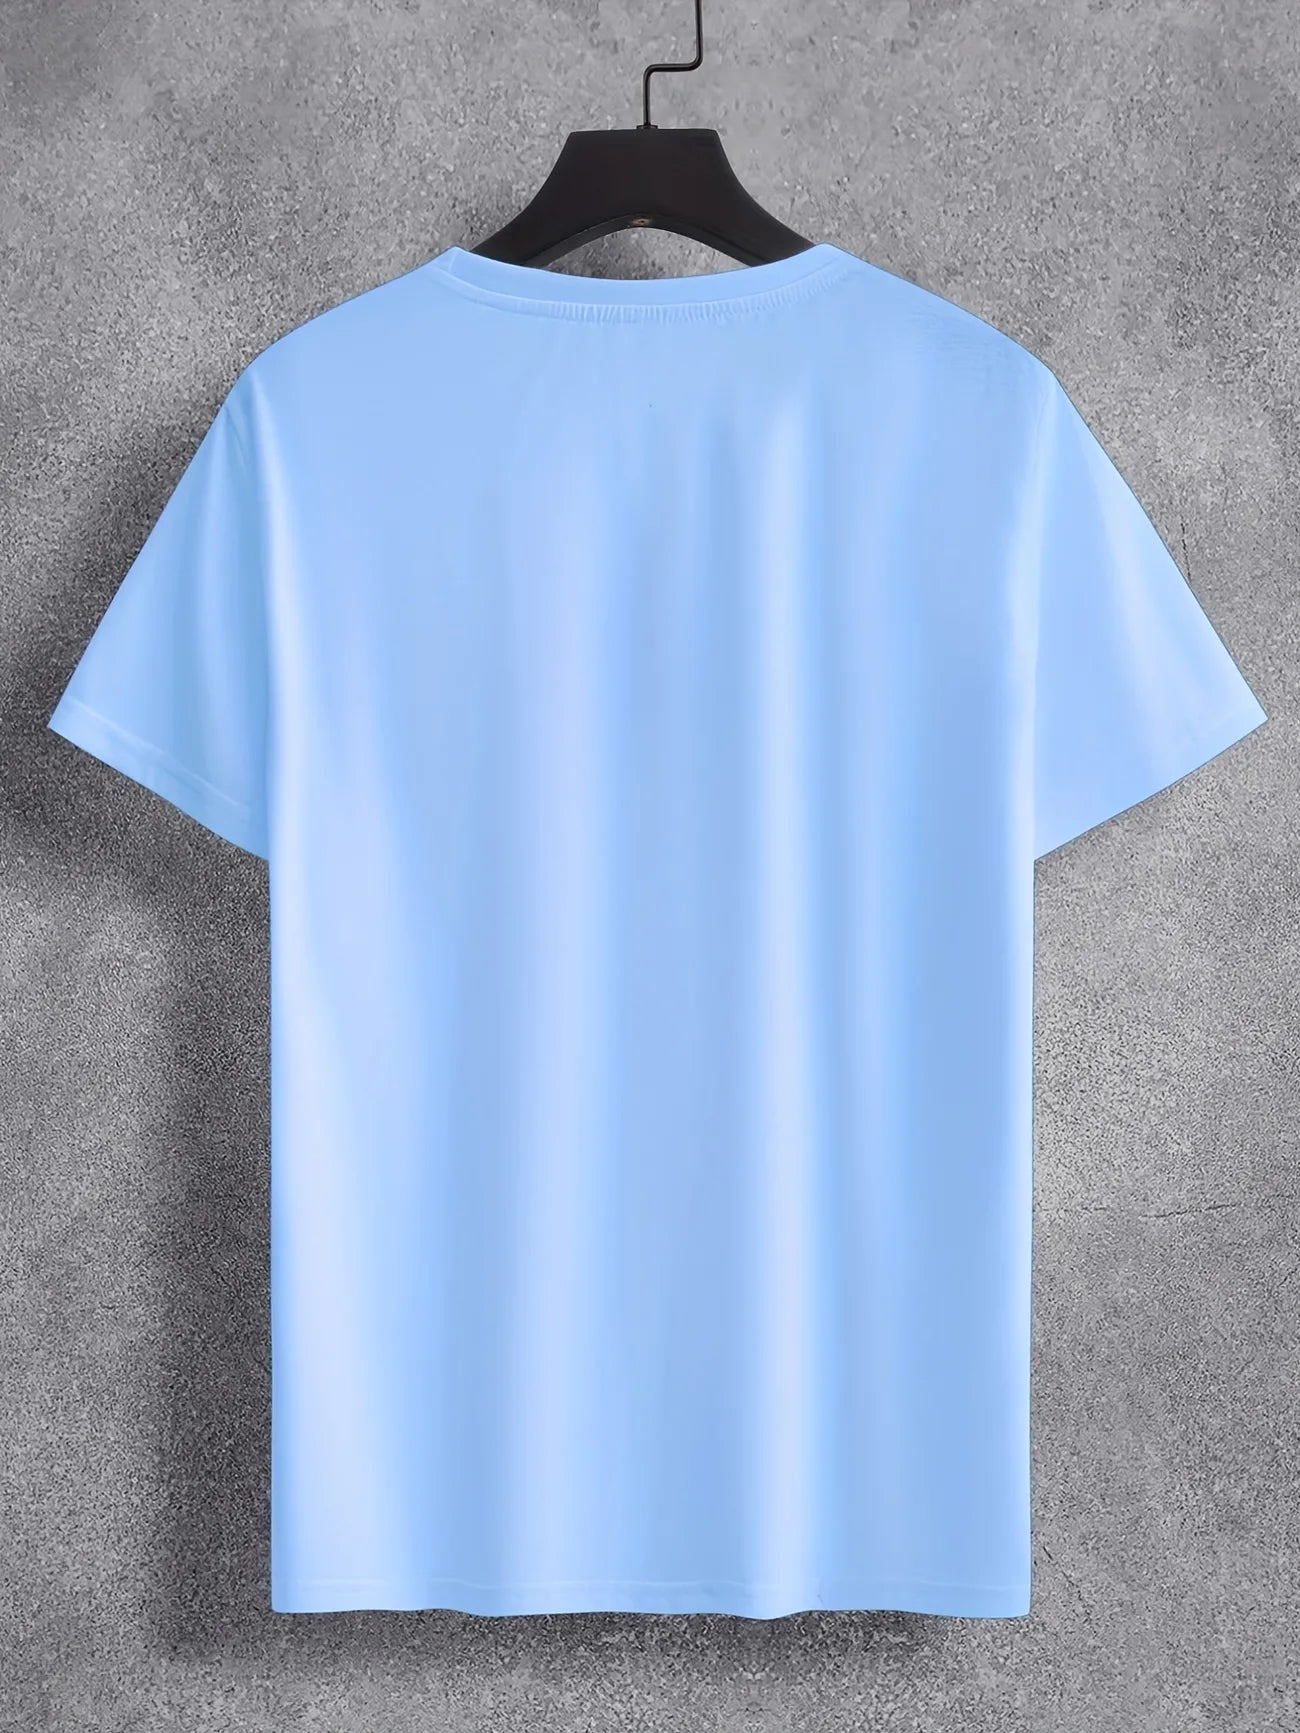 Mens Cotton Sticker Printed T-Shirt TTMPS93 - Light Blue